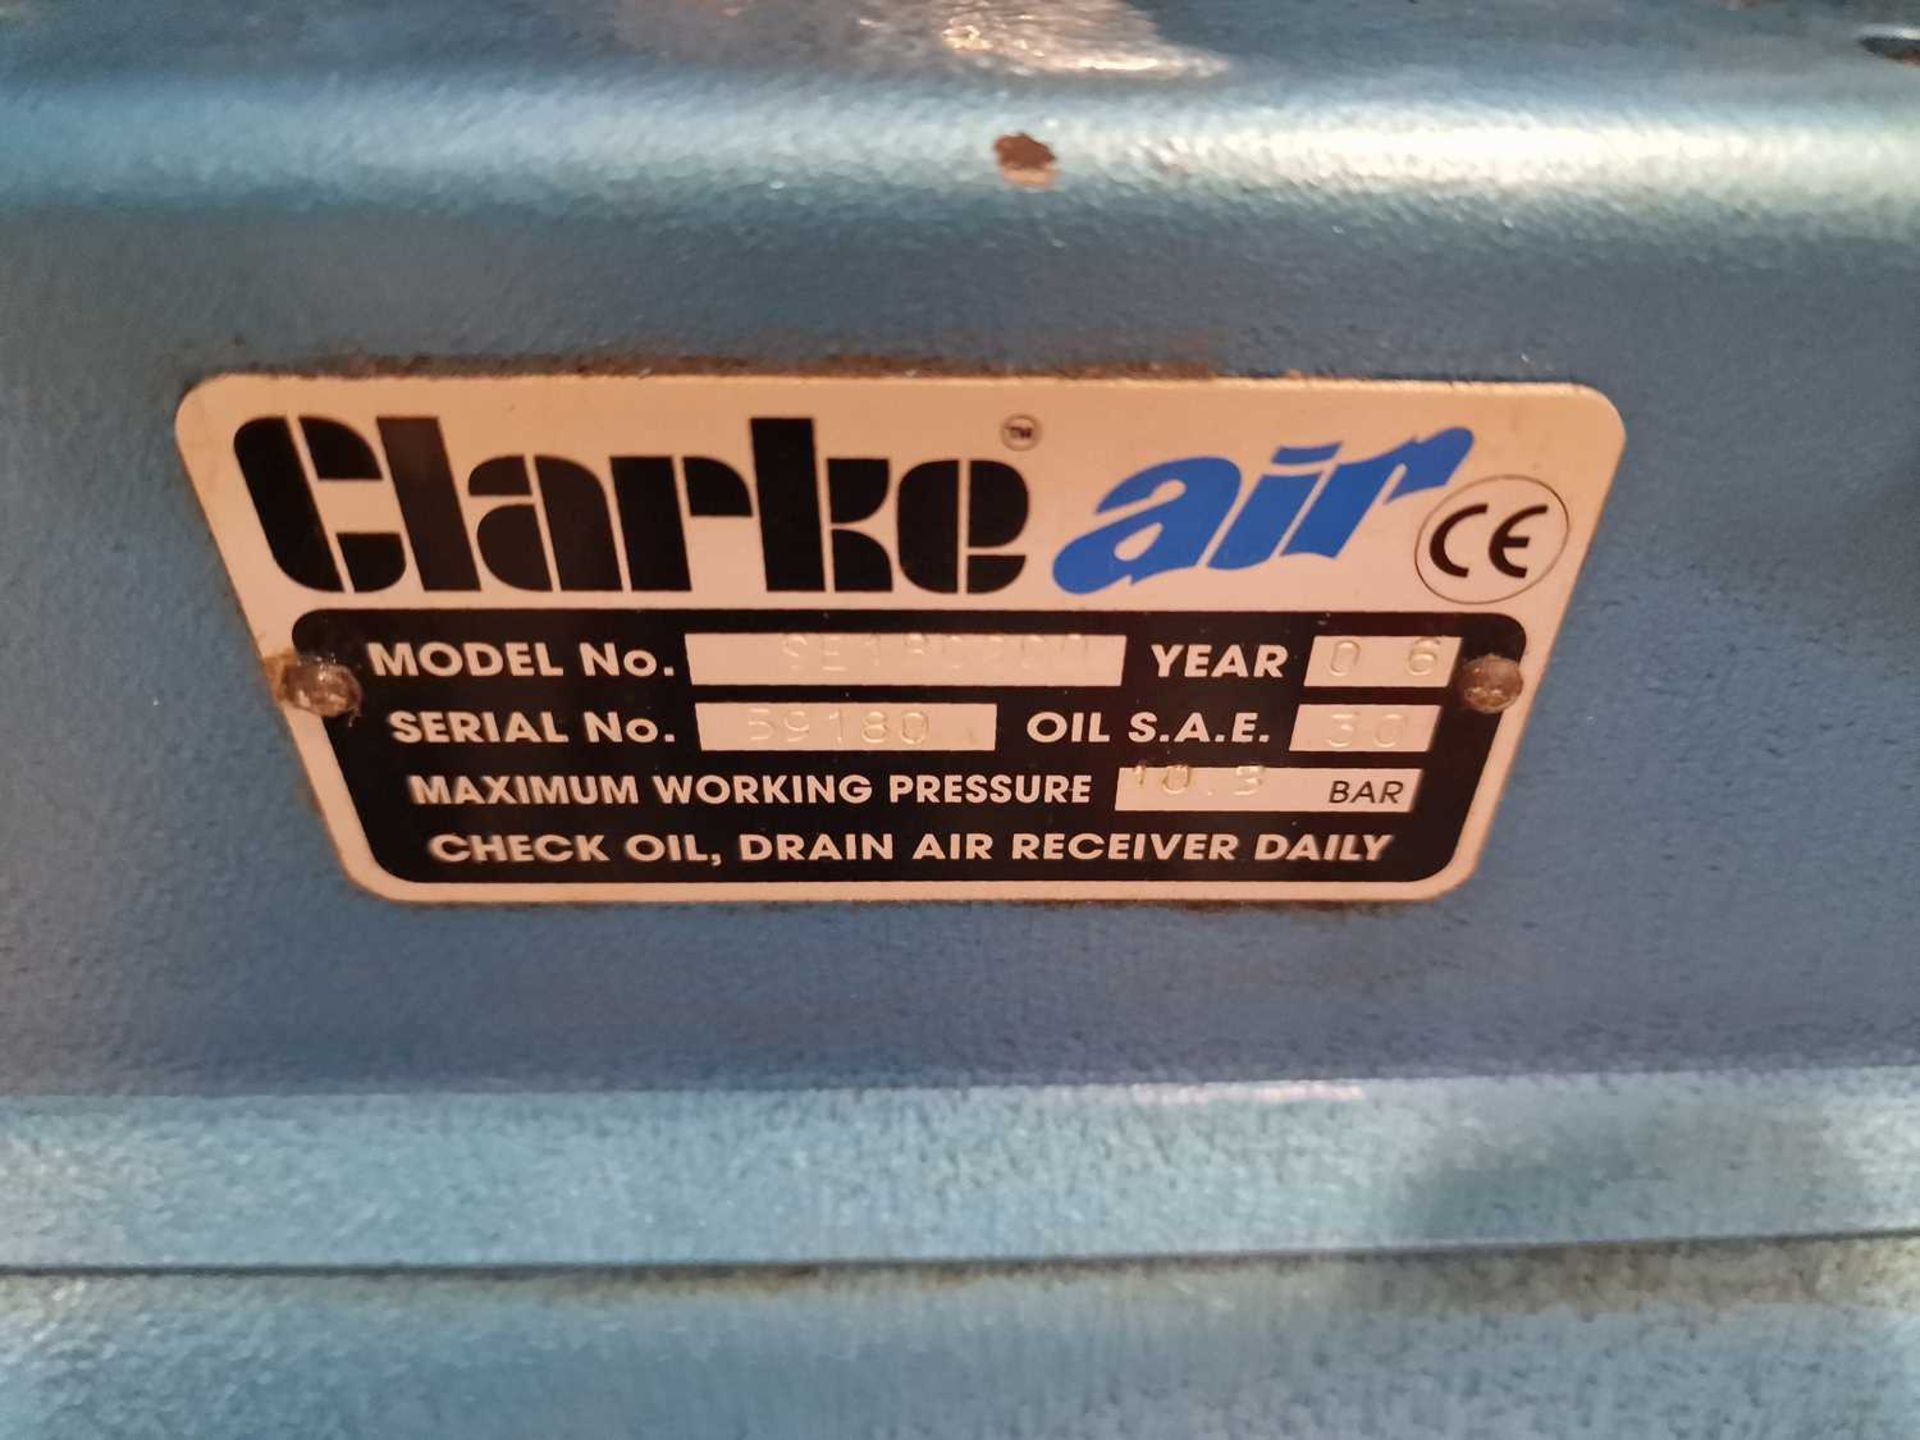 2006 Clarke Air 400Volt Garage Compressor - Image 6 of 6